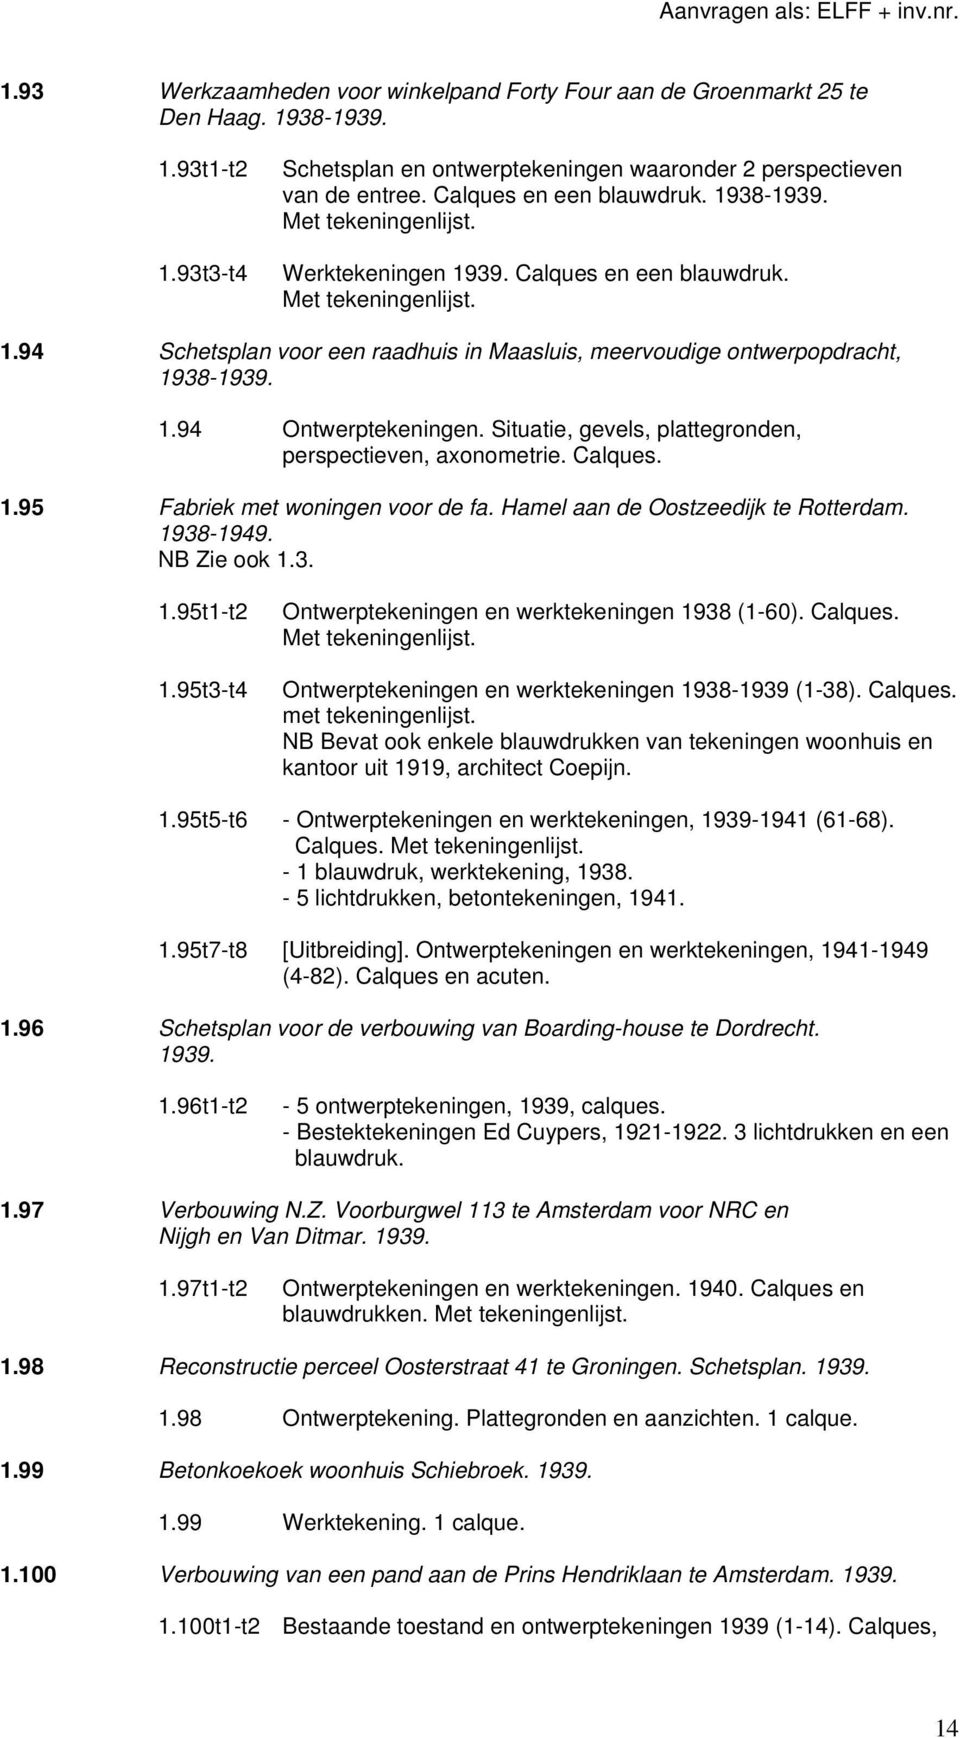 Situatie, gevels, plattegronden, perspectieven, axonometrie. Calques. 1.95 Fabriek met woningen voor de fa. Hamel aan de Oostzeedijk te Rotterdam. 1938-1949. NB Zie ook 1.3. 1.95t1-t2 1.